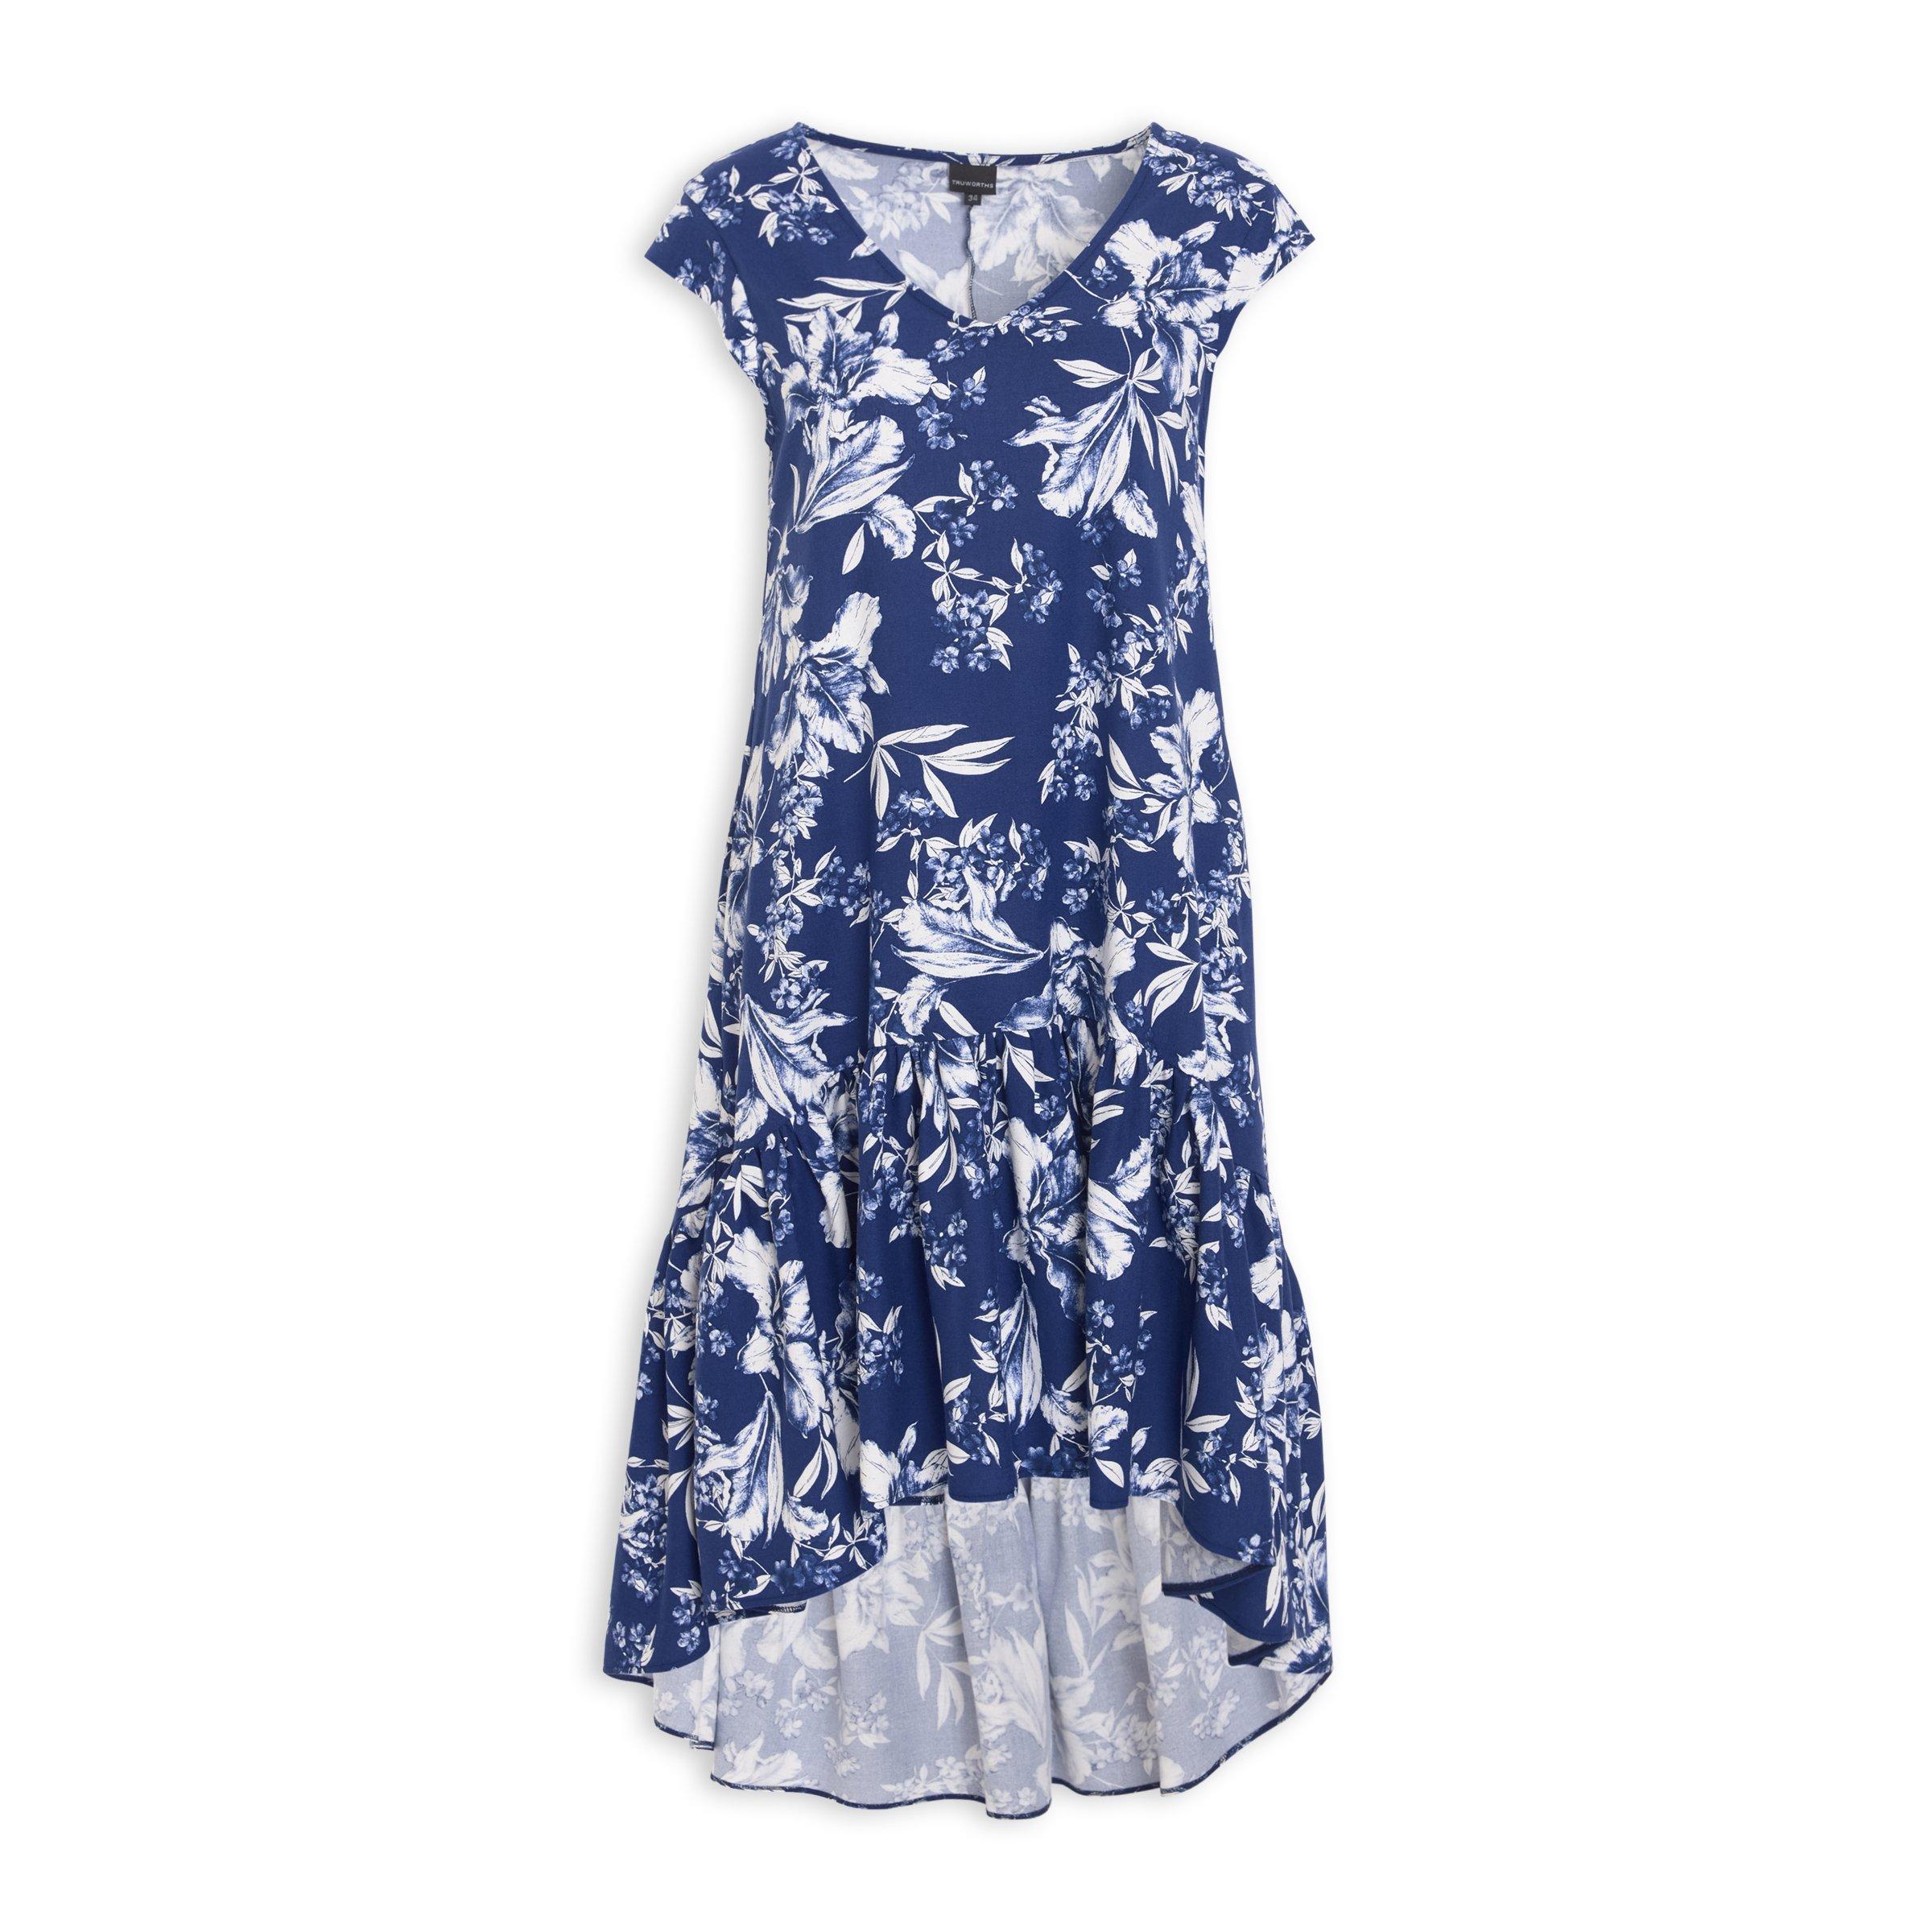 Buy Truworths Blue Printed A-Line Dress Online | Truworths